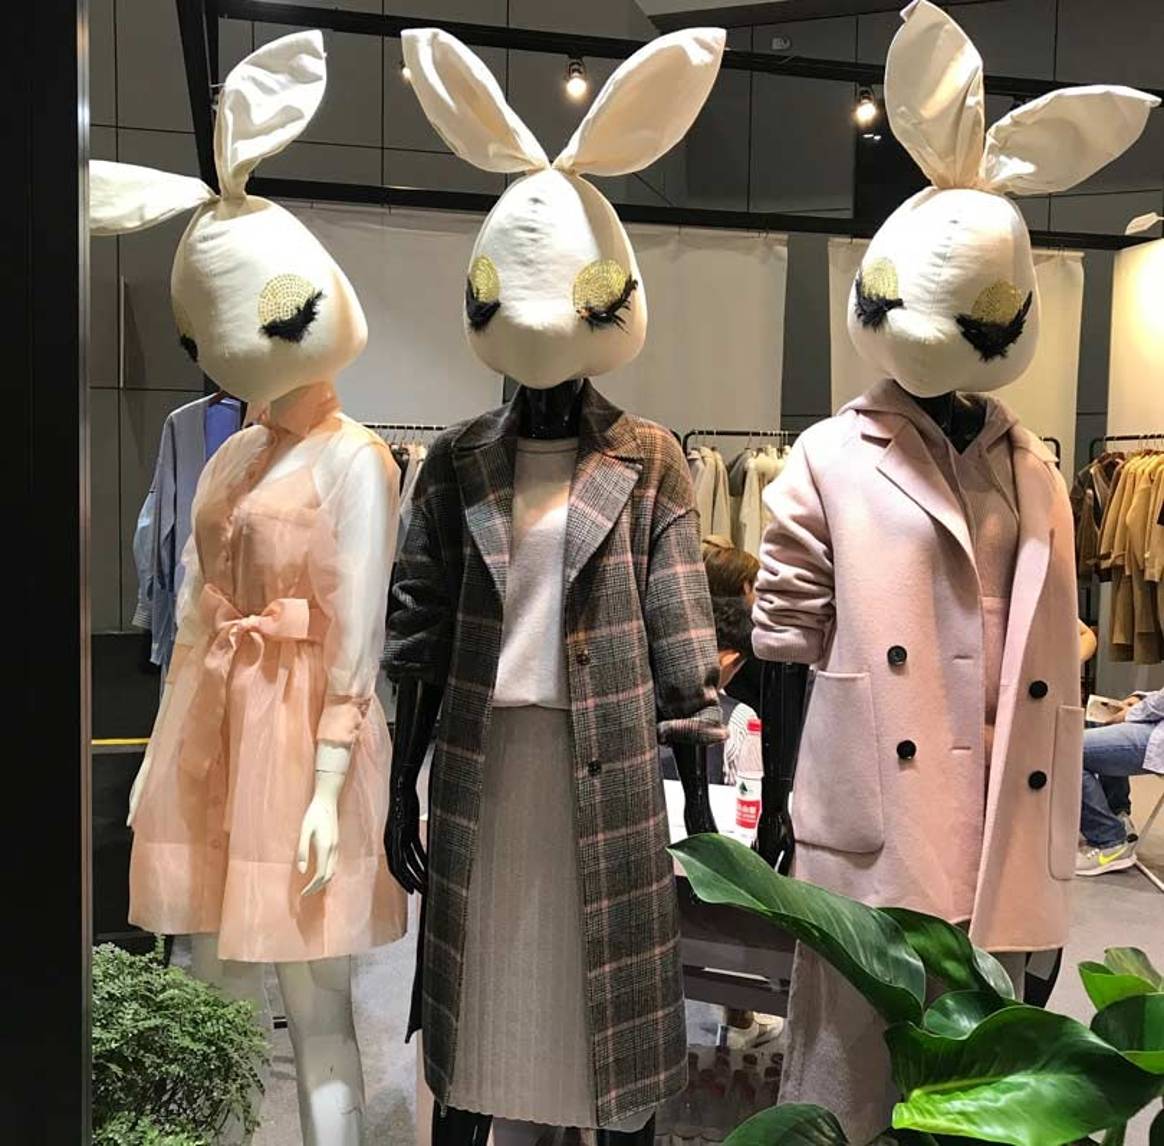 Chic Shanghai: La industria de la moda china apunta a su mercado interno nacional